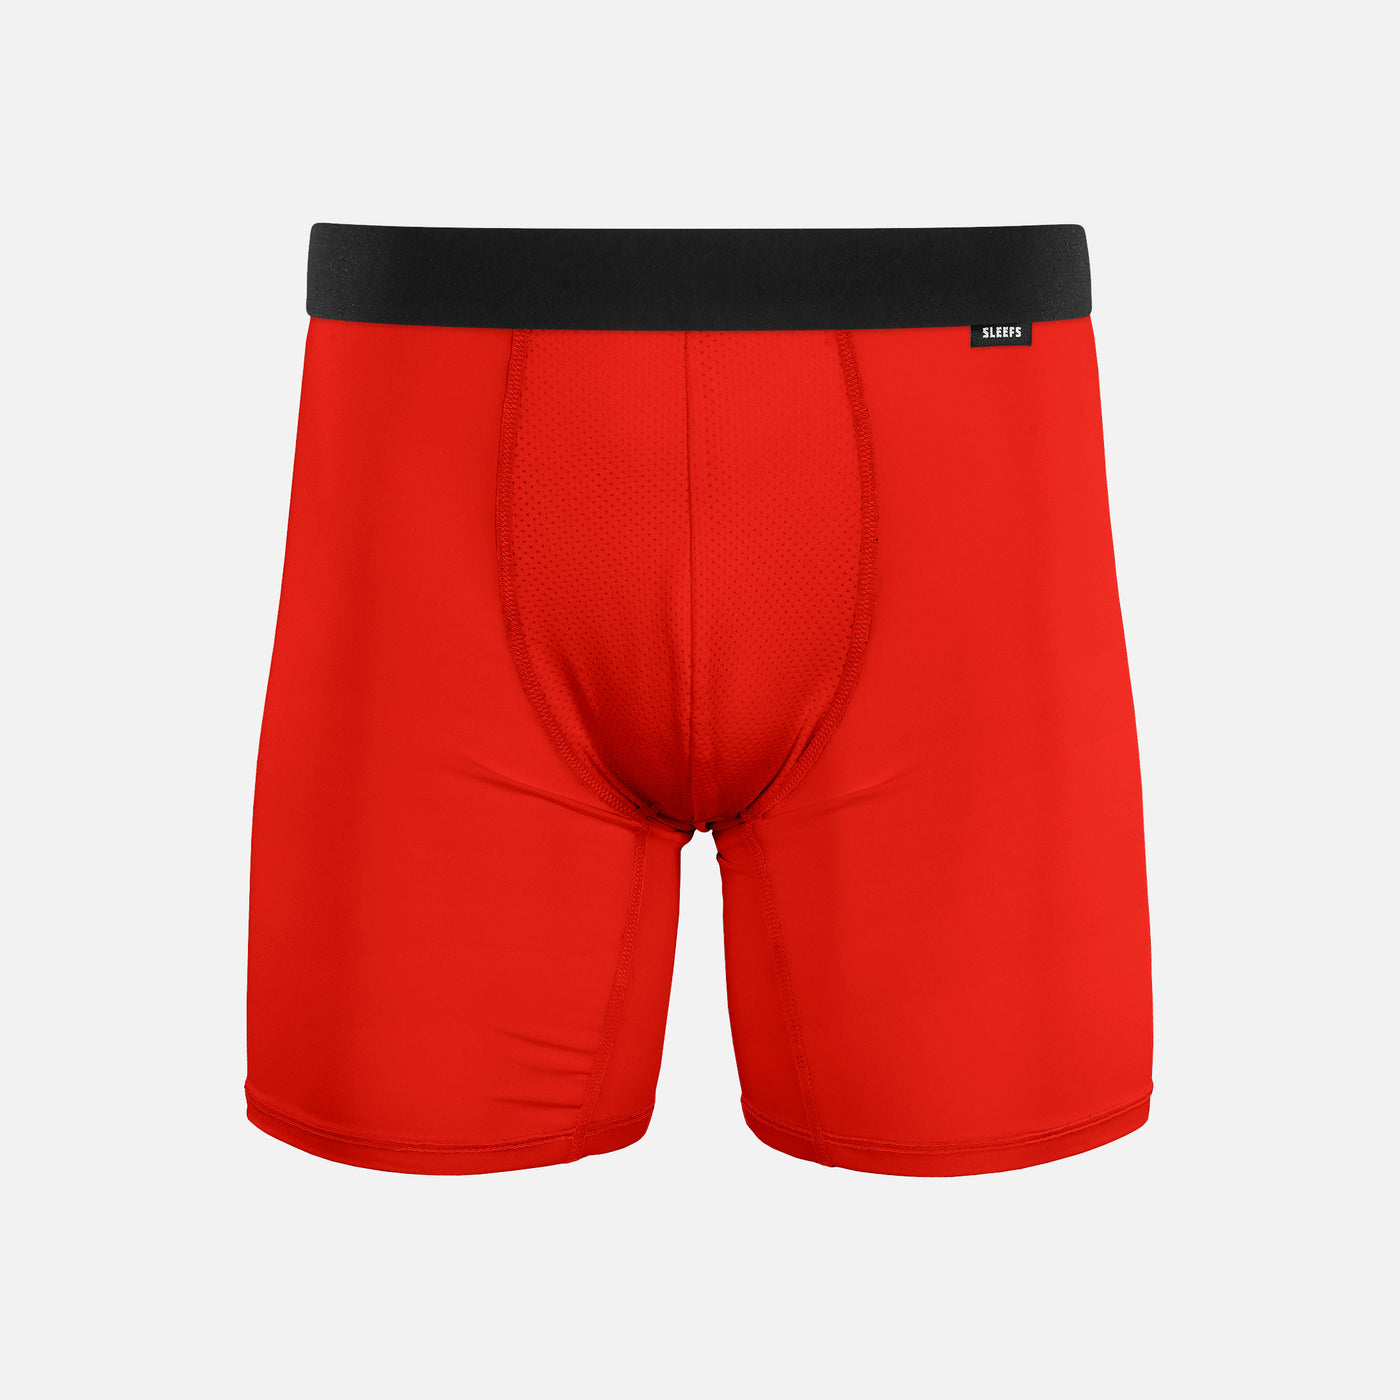 Hue Red Men's Underwear